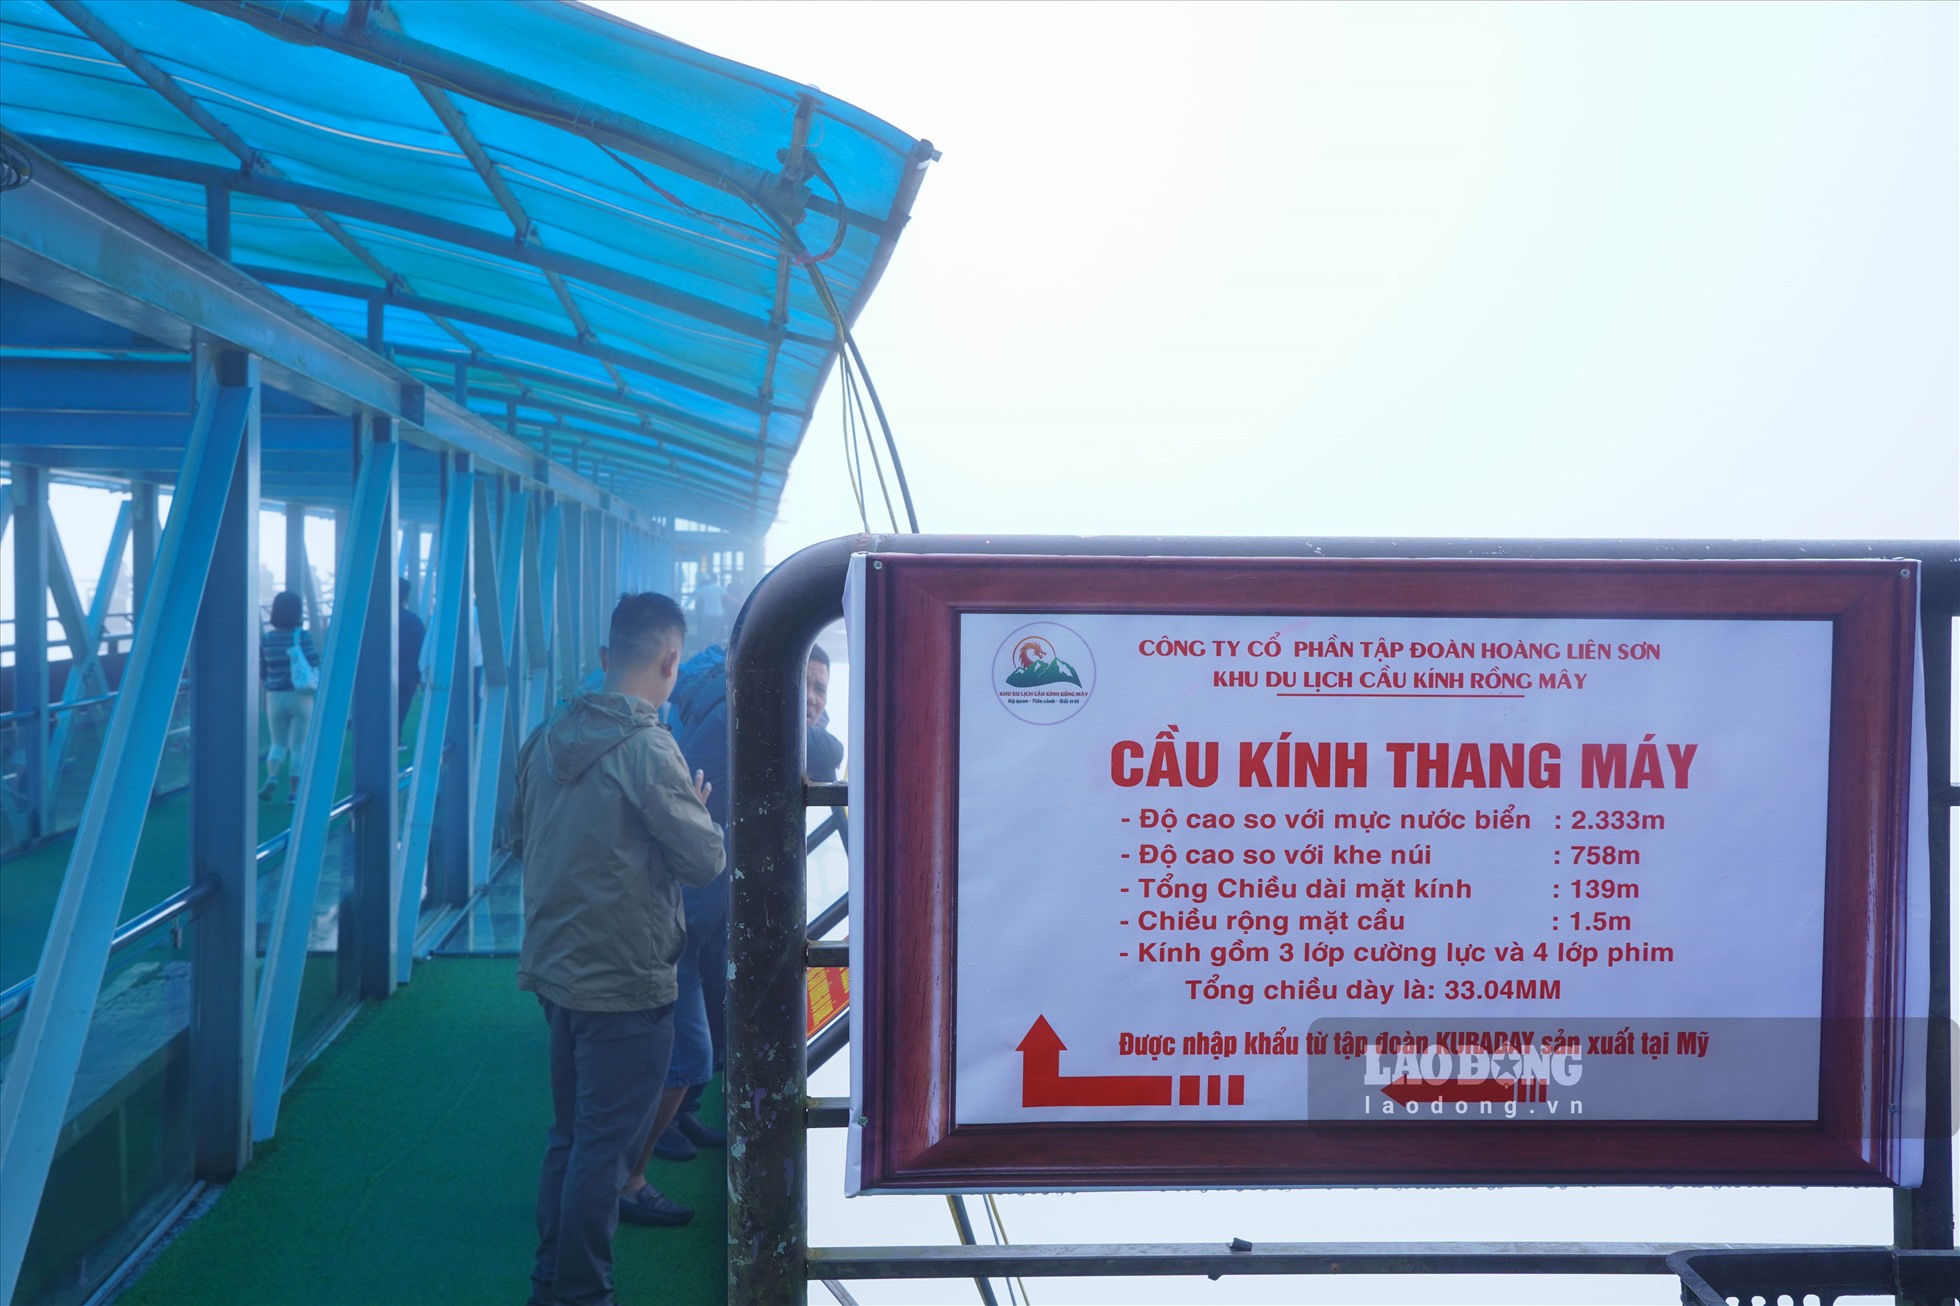 Cầu kính thang máy có độ cao so với khe núi là 758m; chiều rộng mặt cầu 1,5m; tổng chiều dài mặt kính 139m; tổng chiều dày là 33,04mm, được sản xuất tại Mỹ và nhập khẩu về Việt Nam.